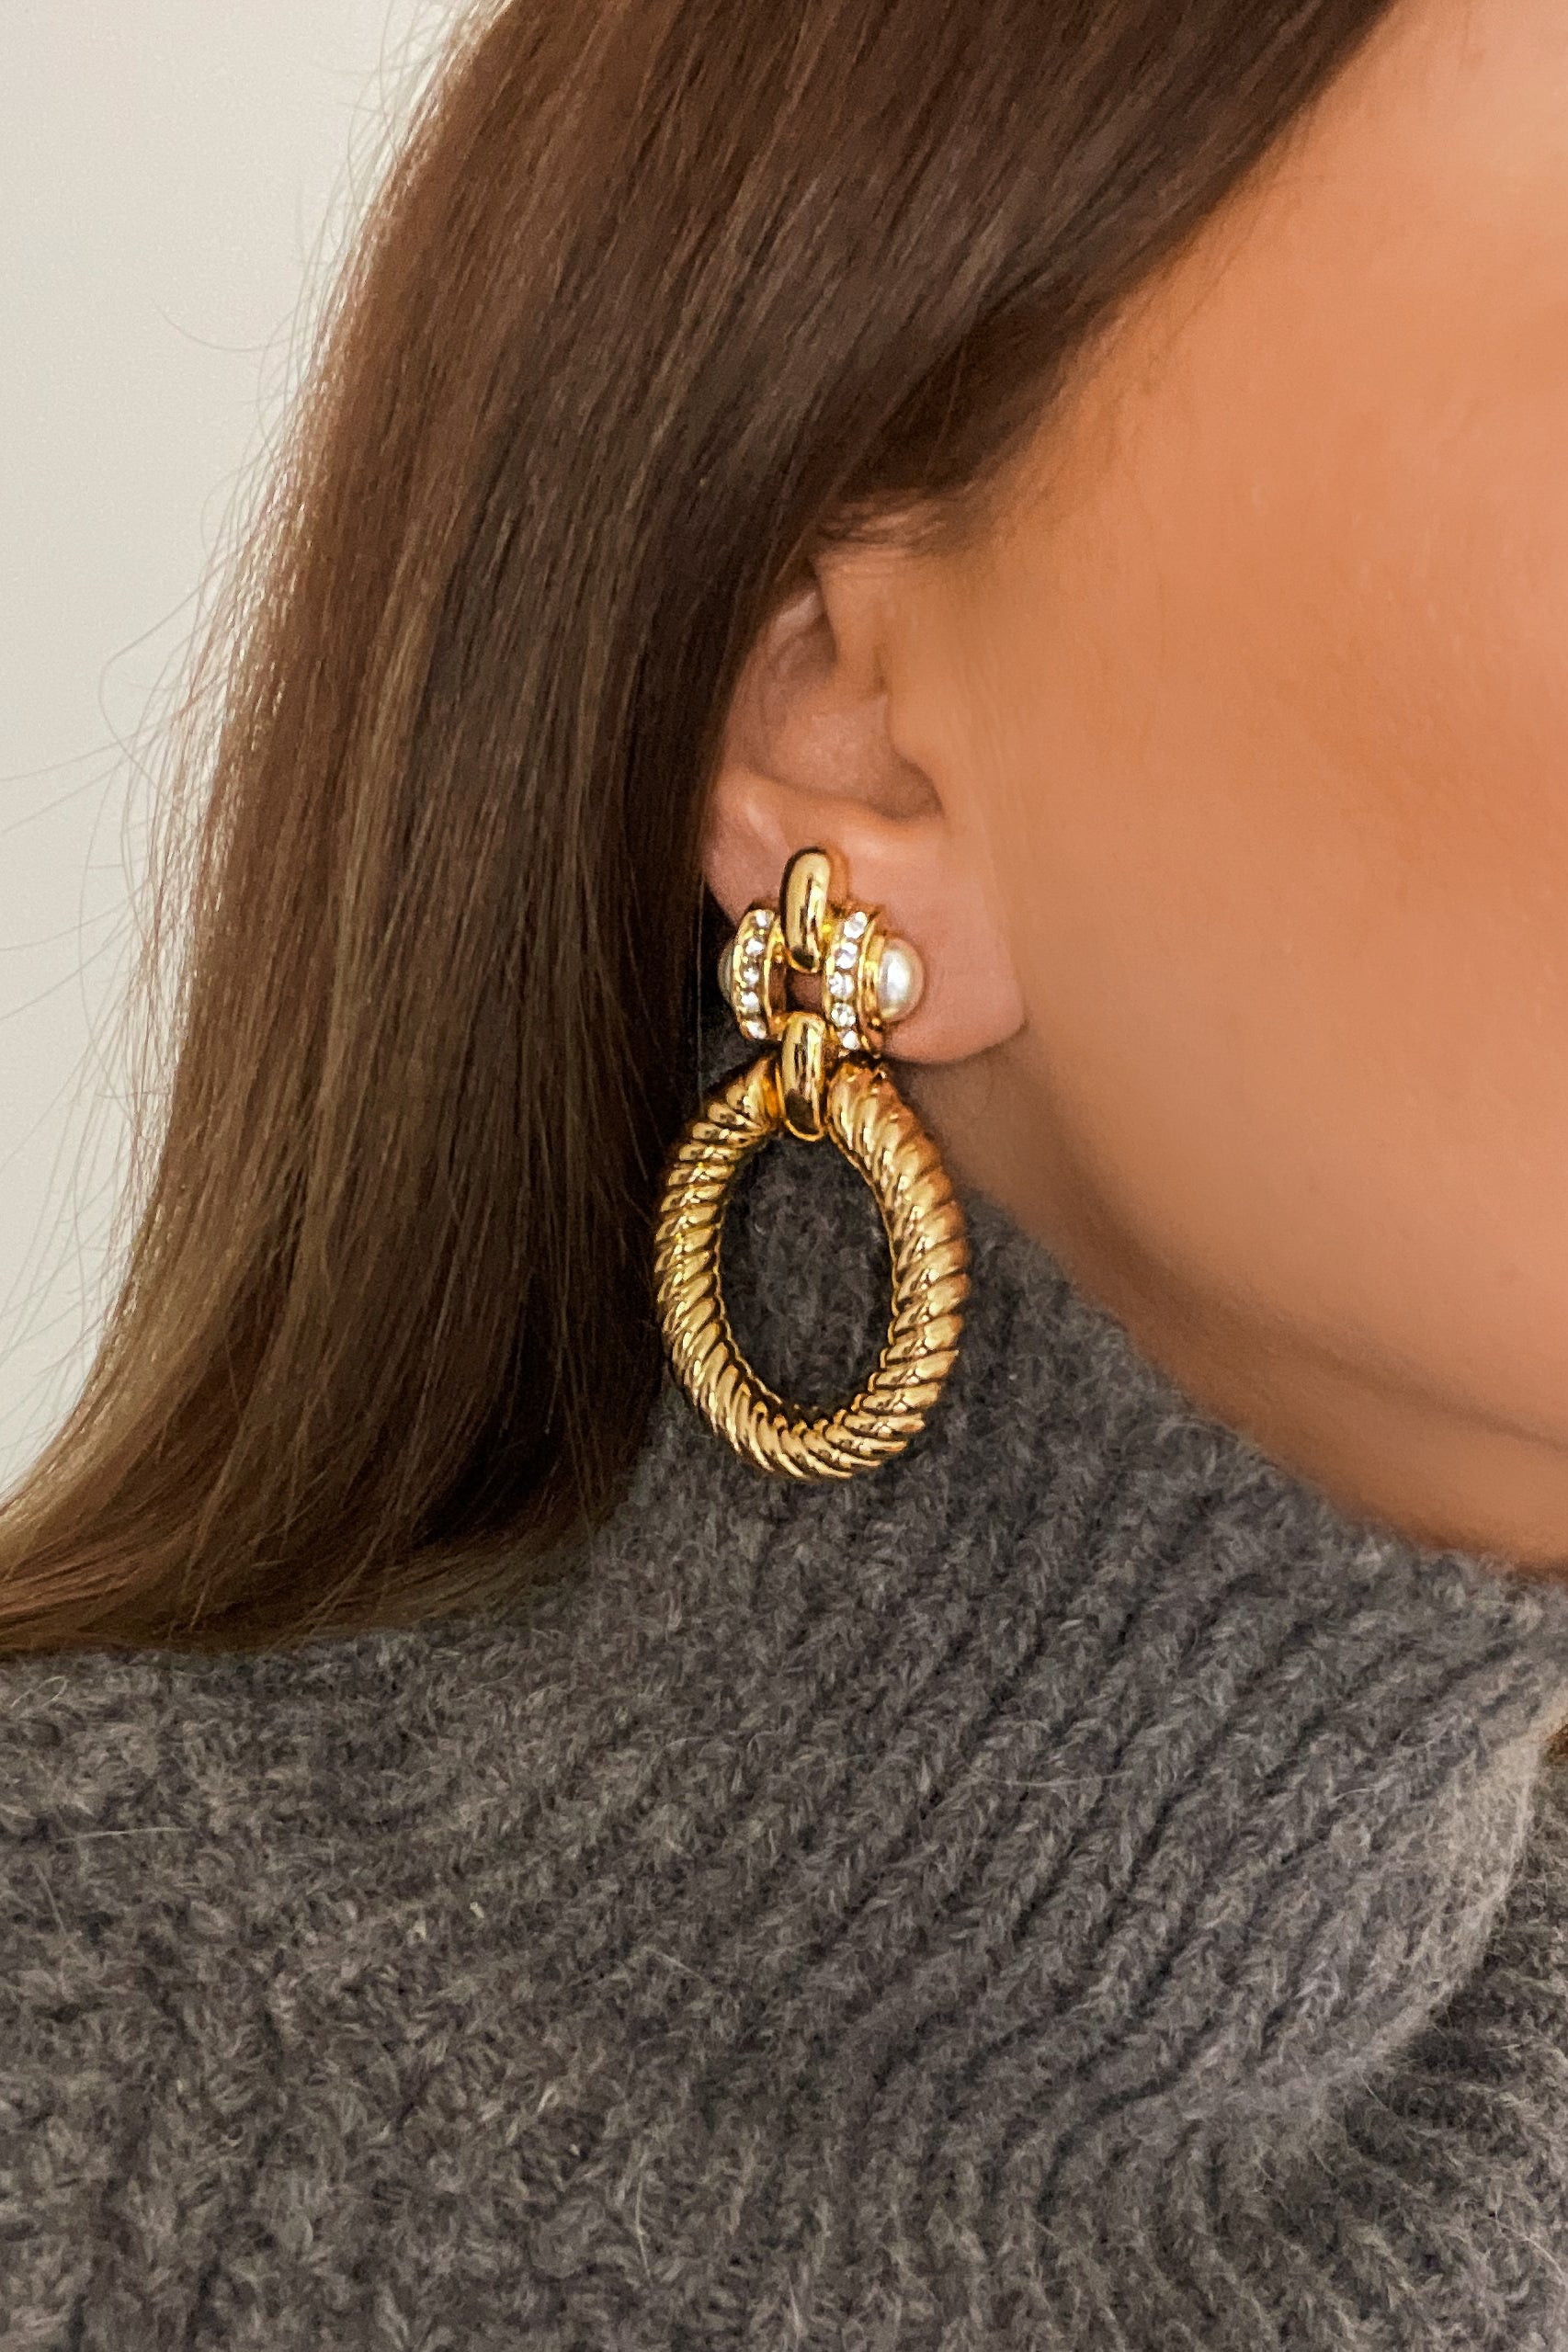 Perla (Vintage) Earrings - Boutique Minimaliste has waterproof, durable, elegant and vintage inspired jewelry